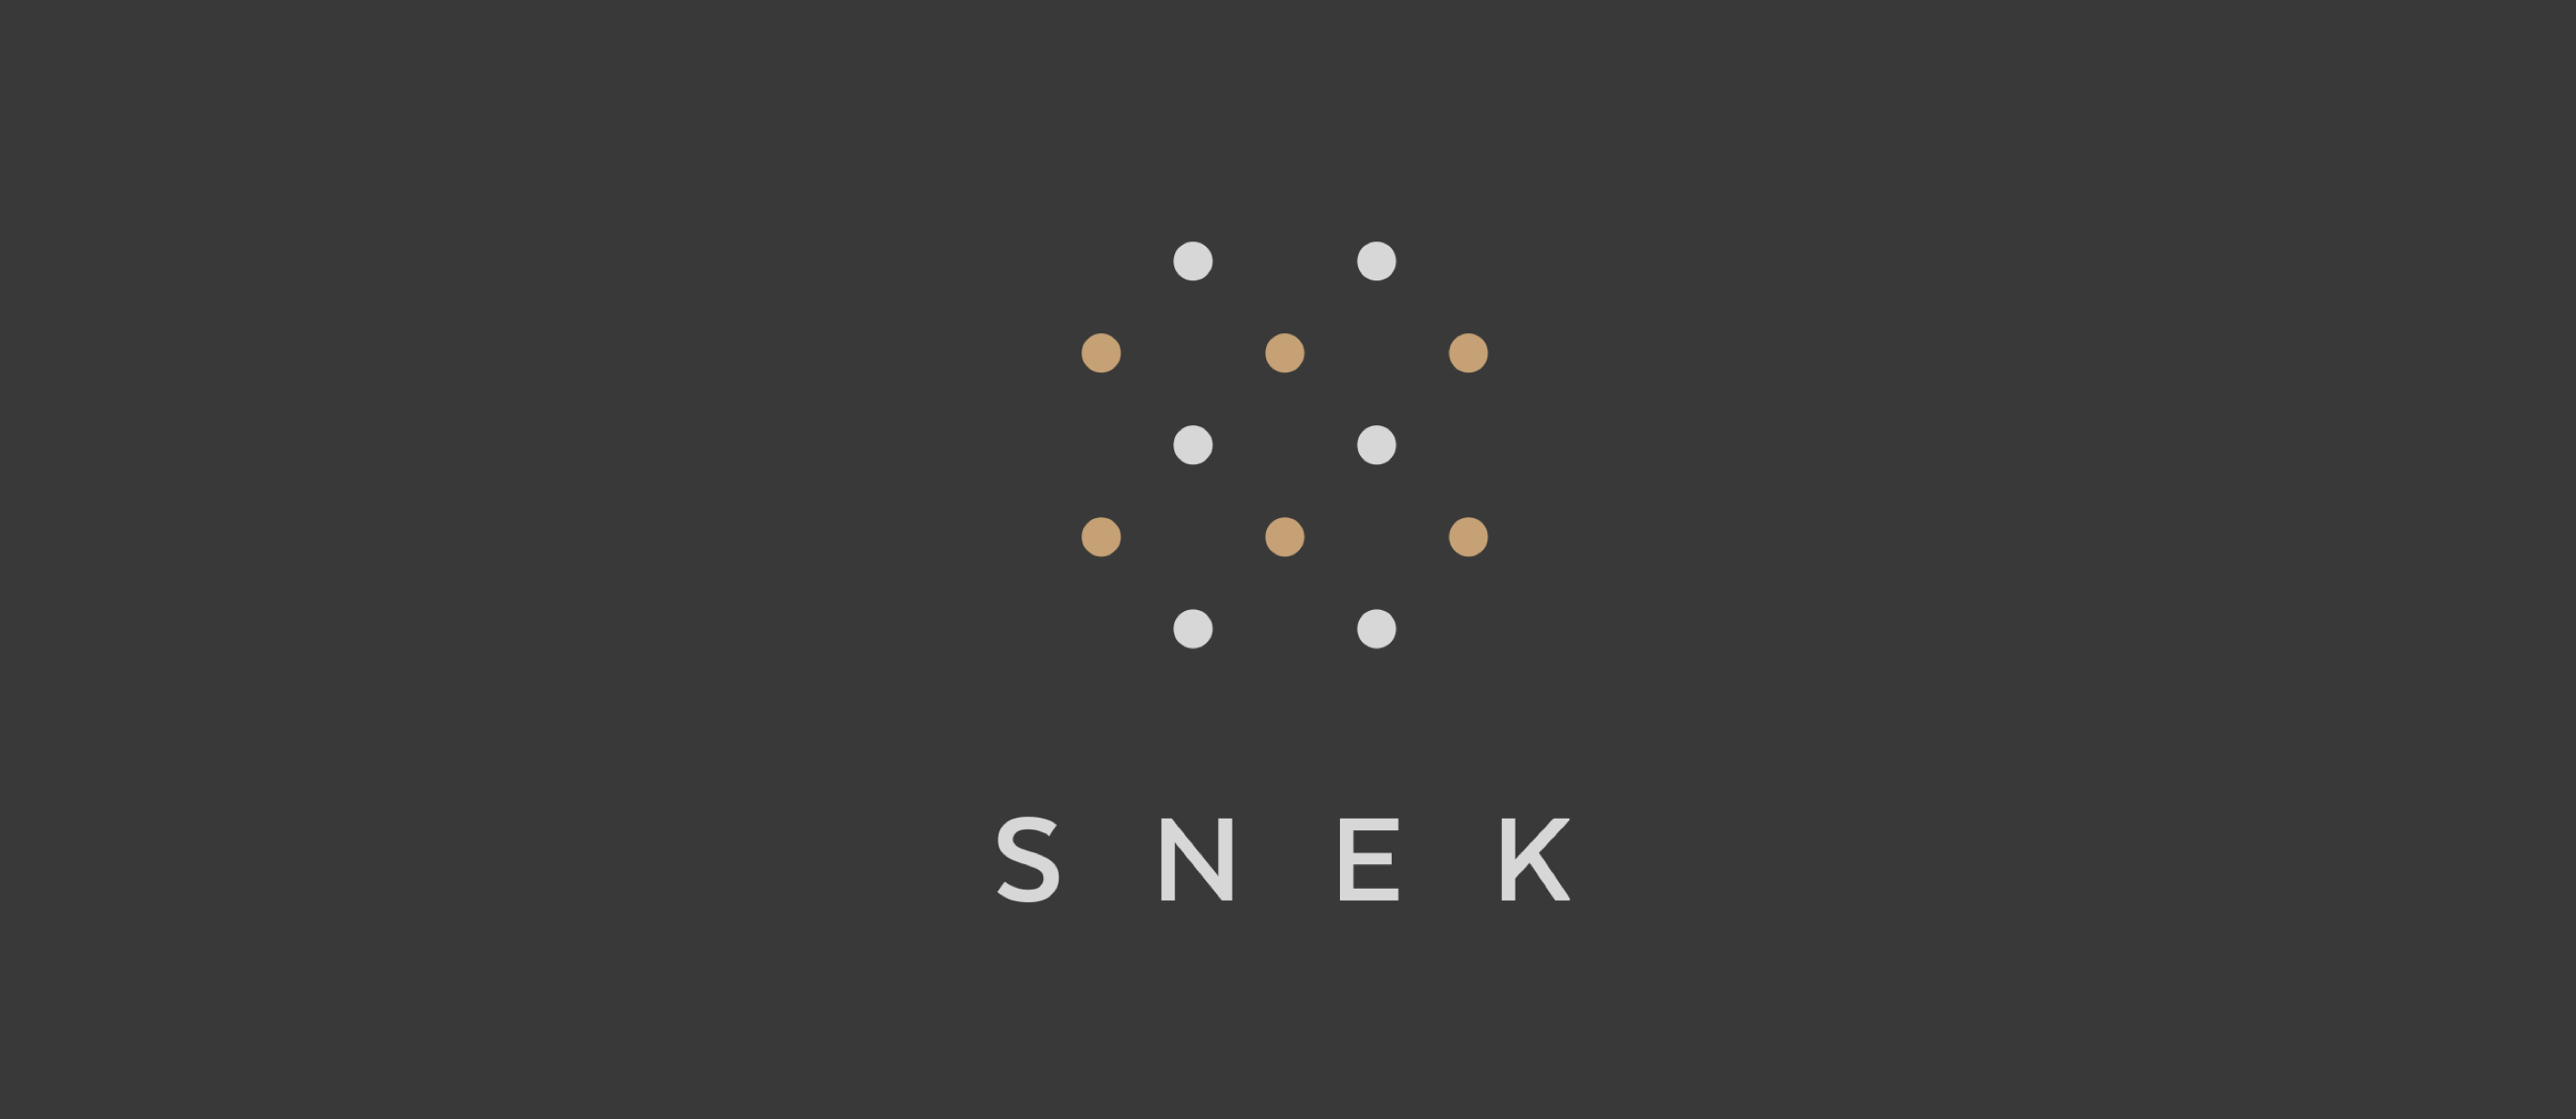 snek_logo1_vertical.png